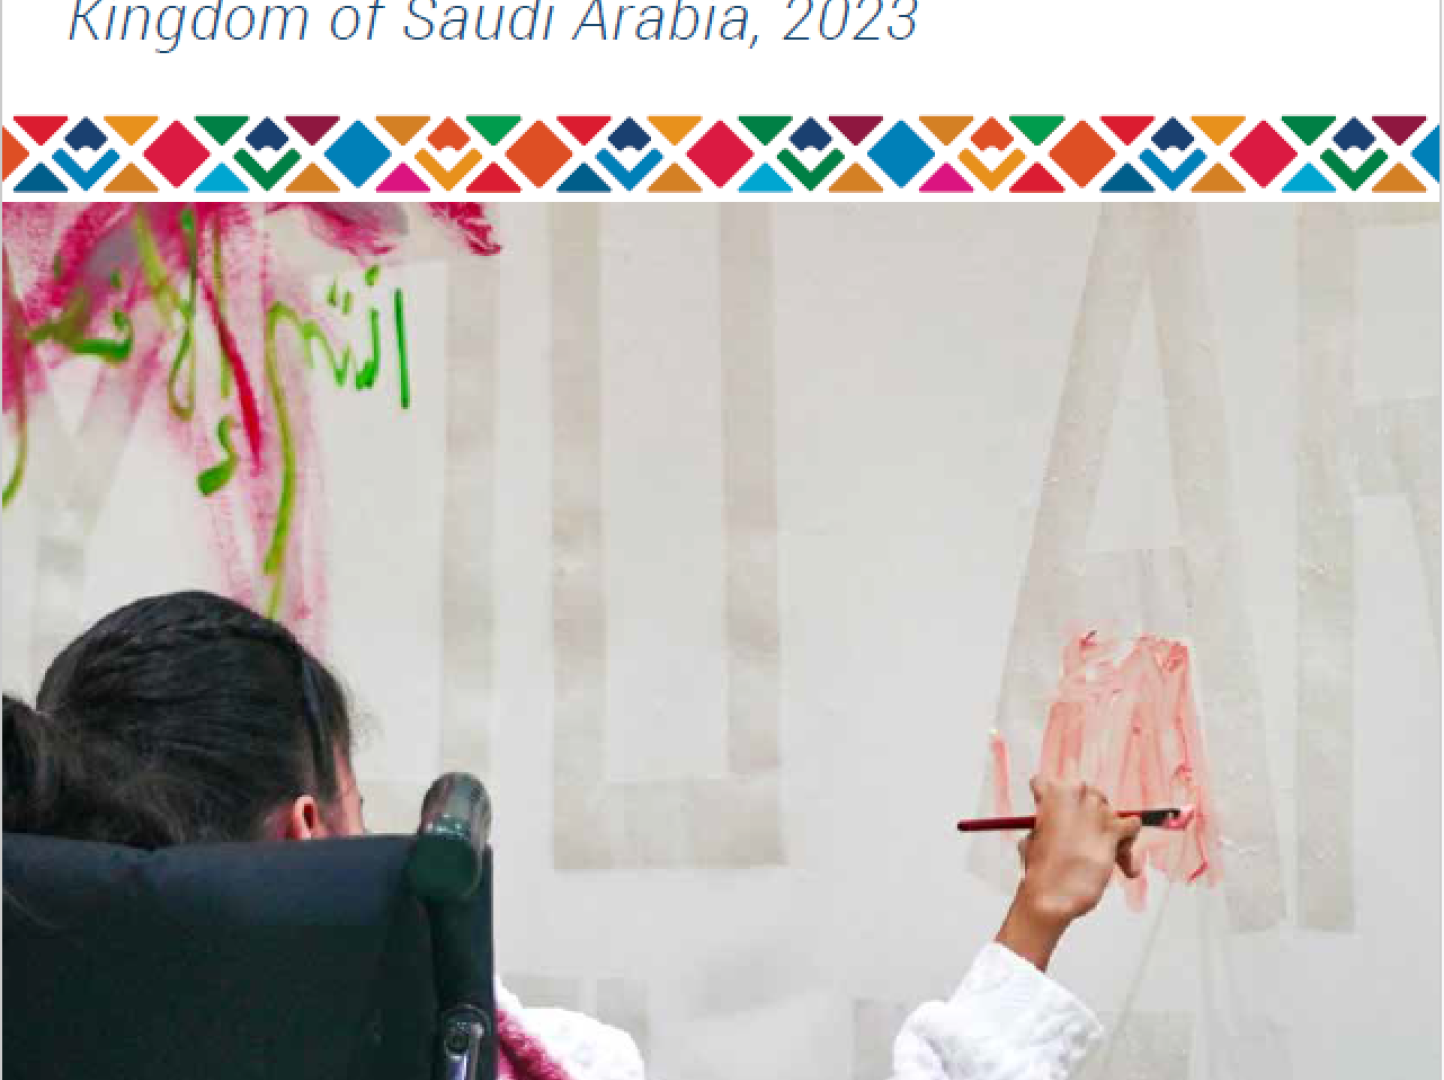 UN Country Results Report - Kingdom of Saudi Arabia 2023